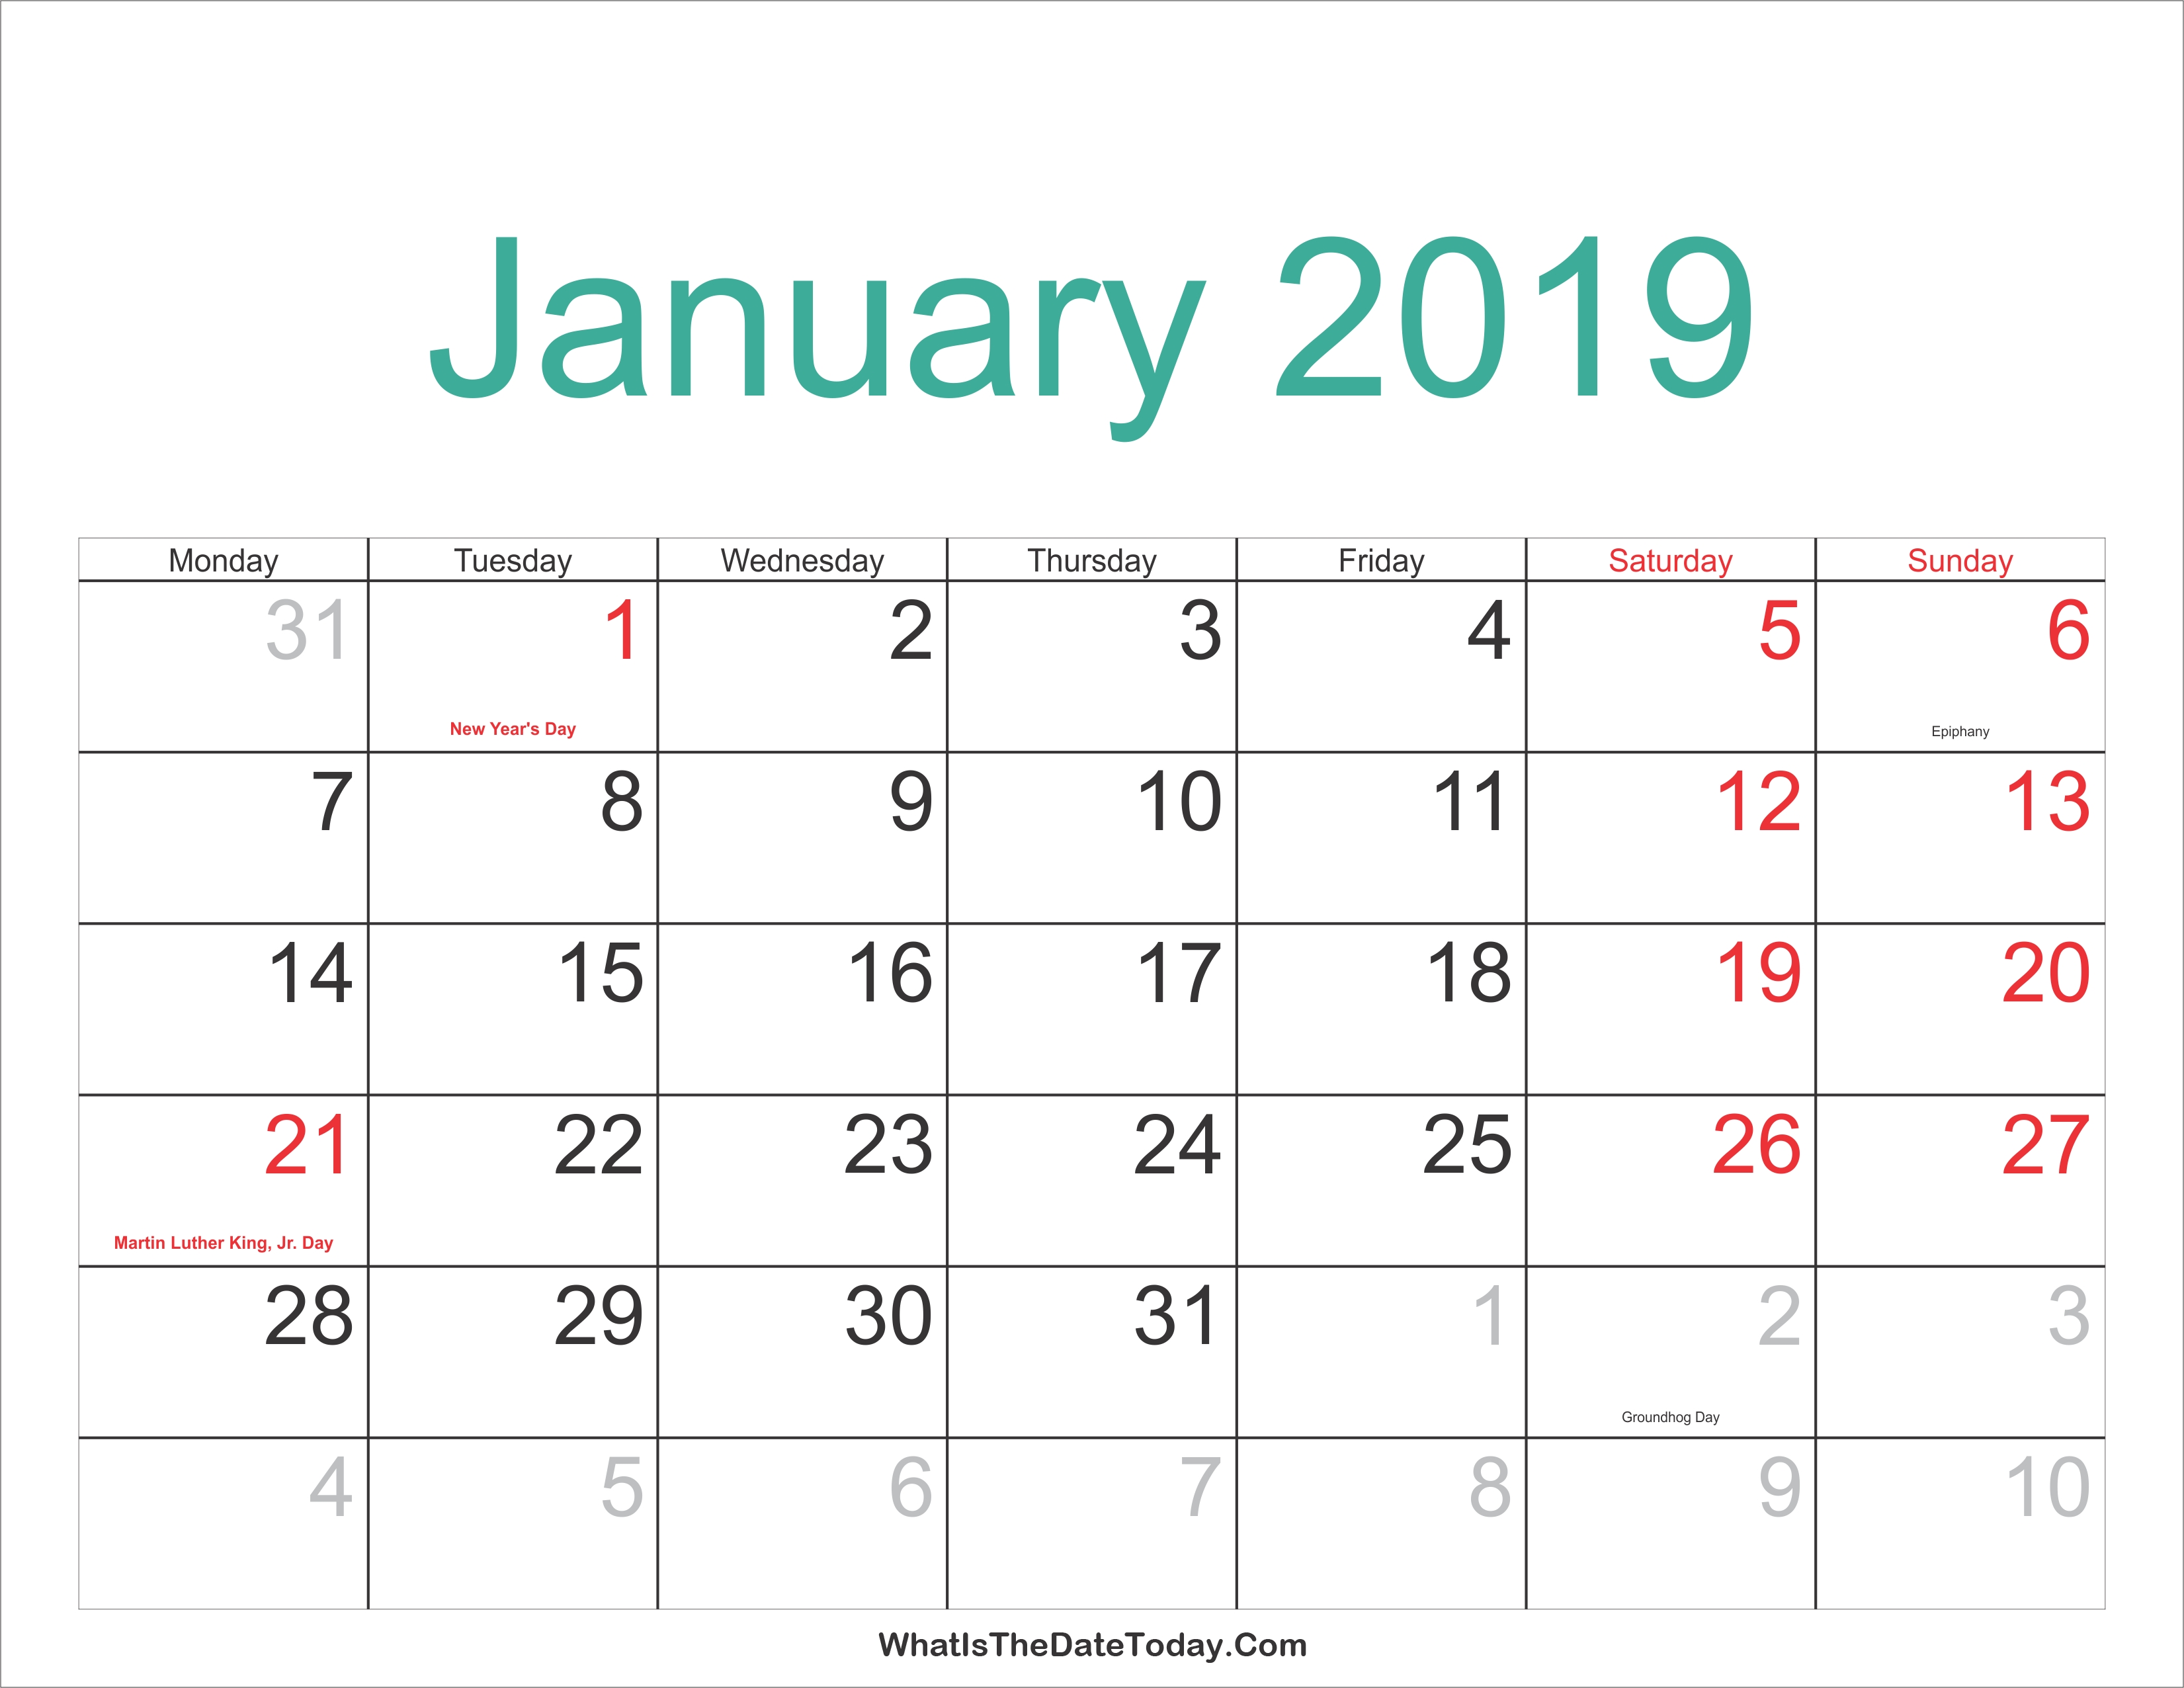 January 2019 Calendar With Holidays 25 Best January 2019 Calendar